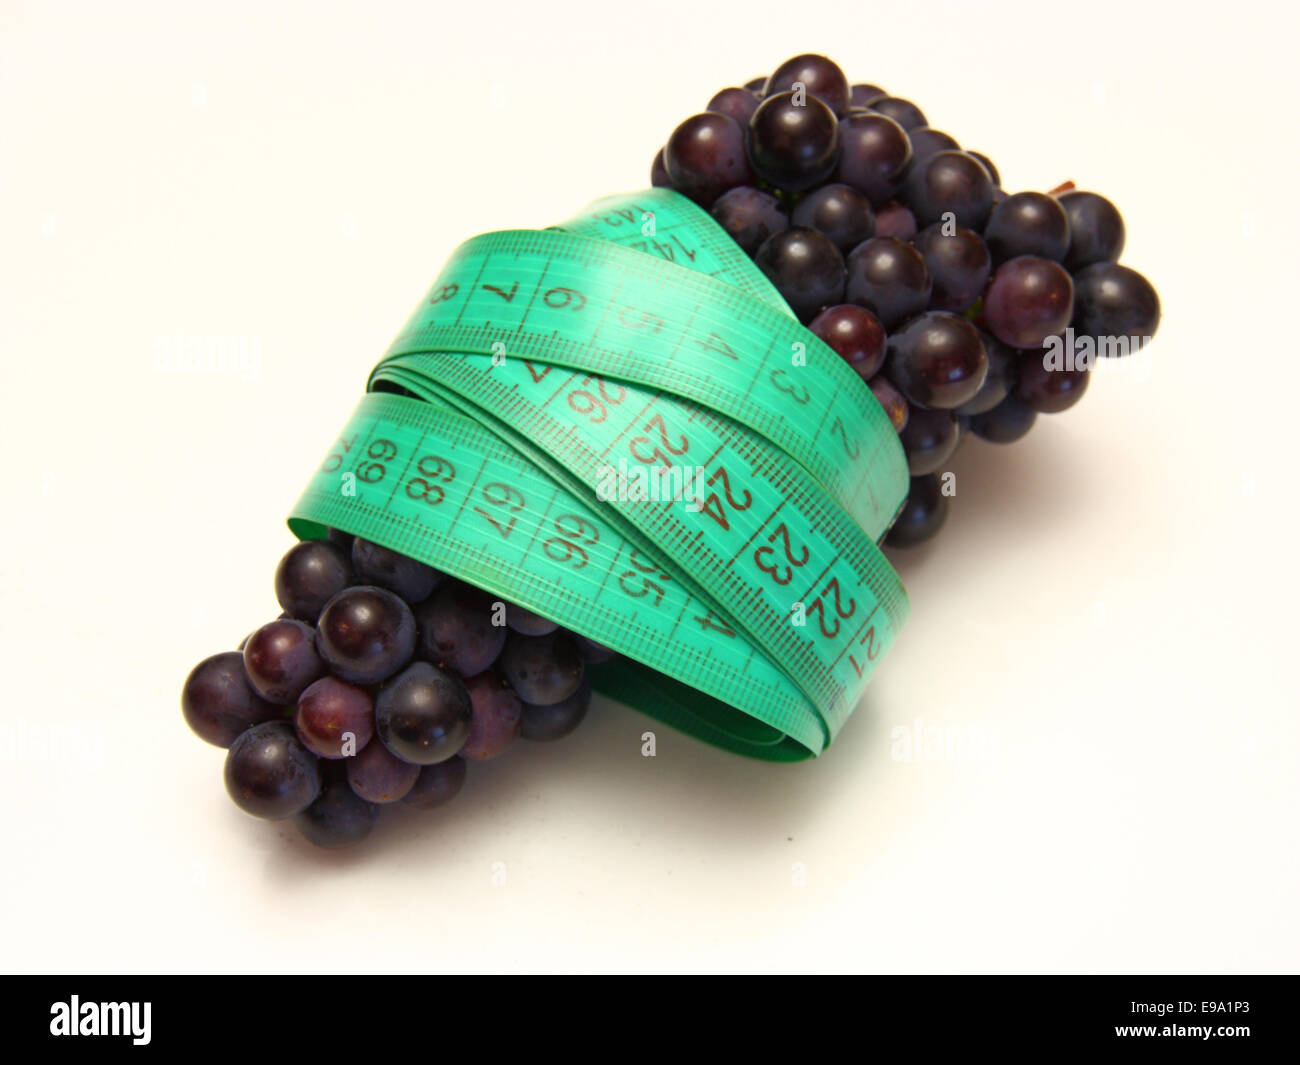 measuring tape around grapes Stock Photo